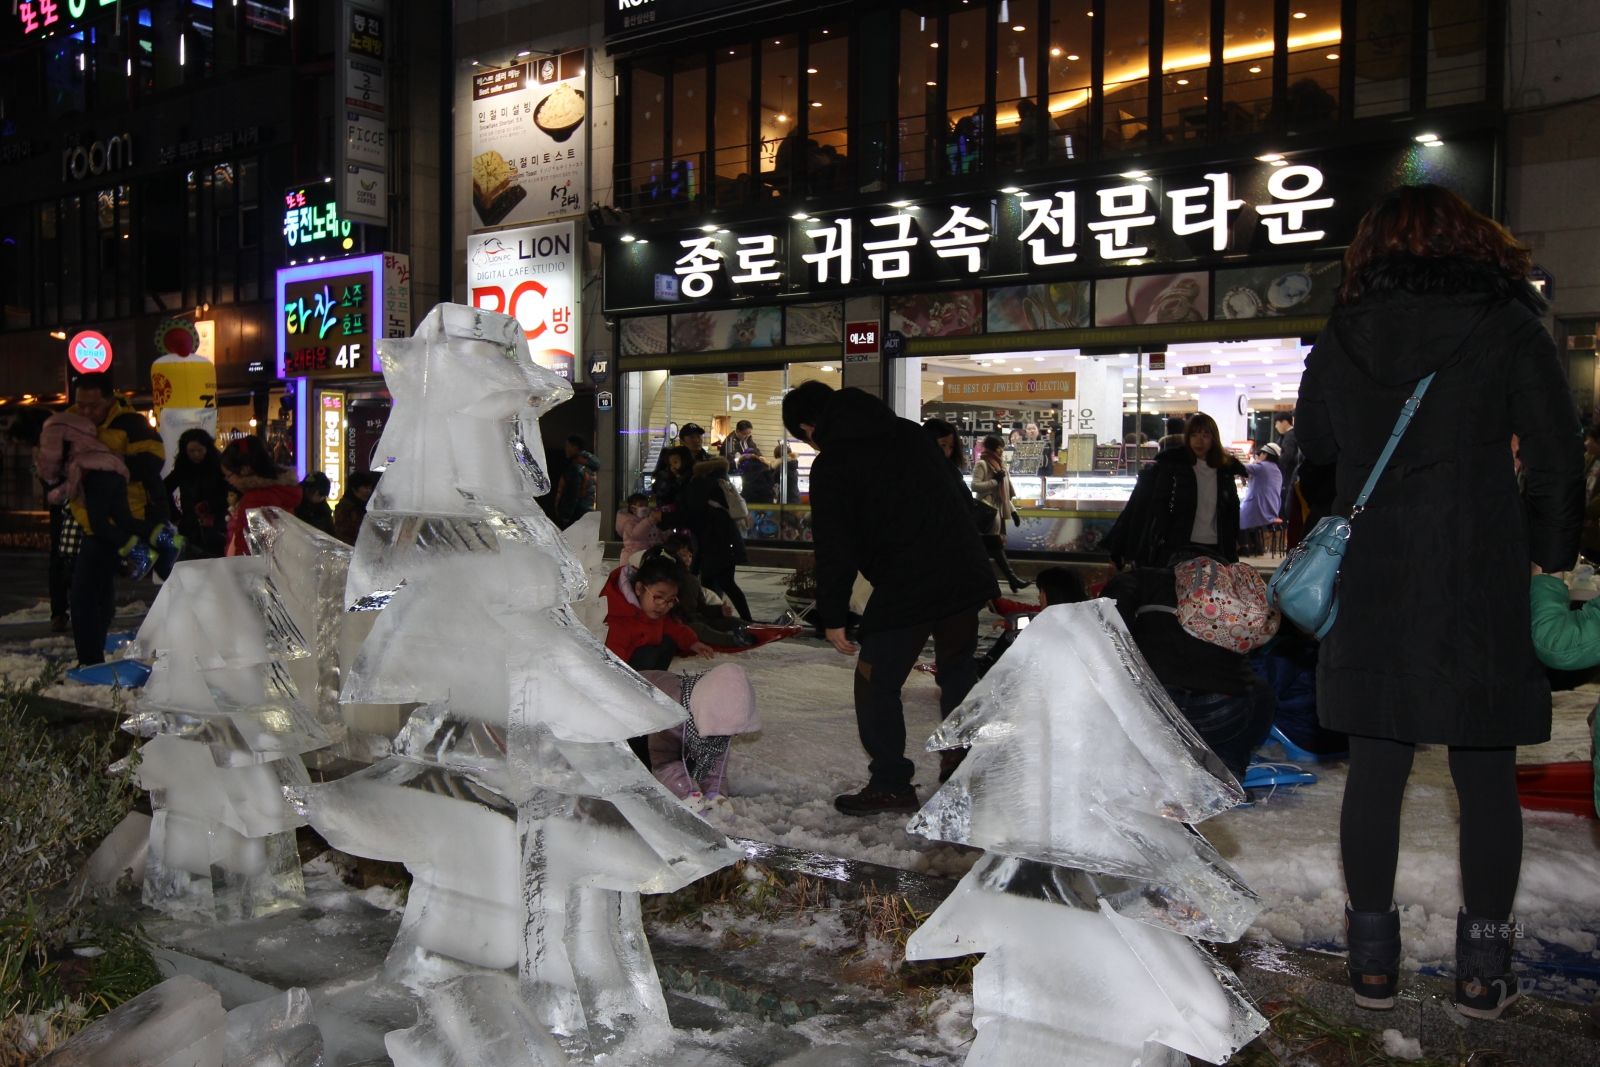 2014 삼산디자인거리 눈꽃축제 의 사진